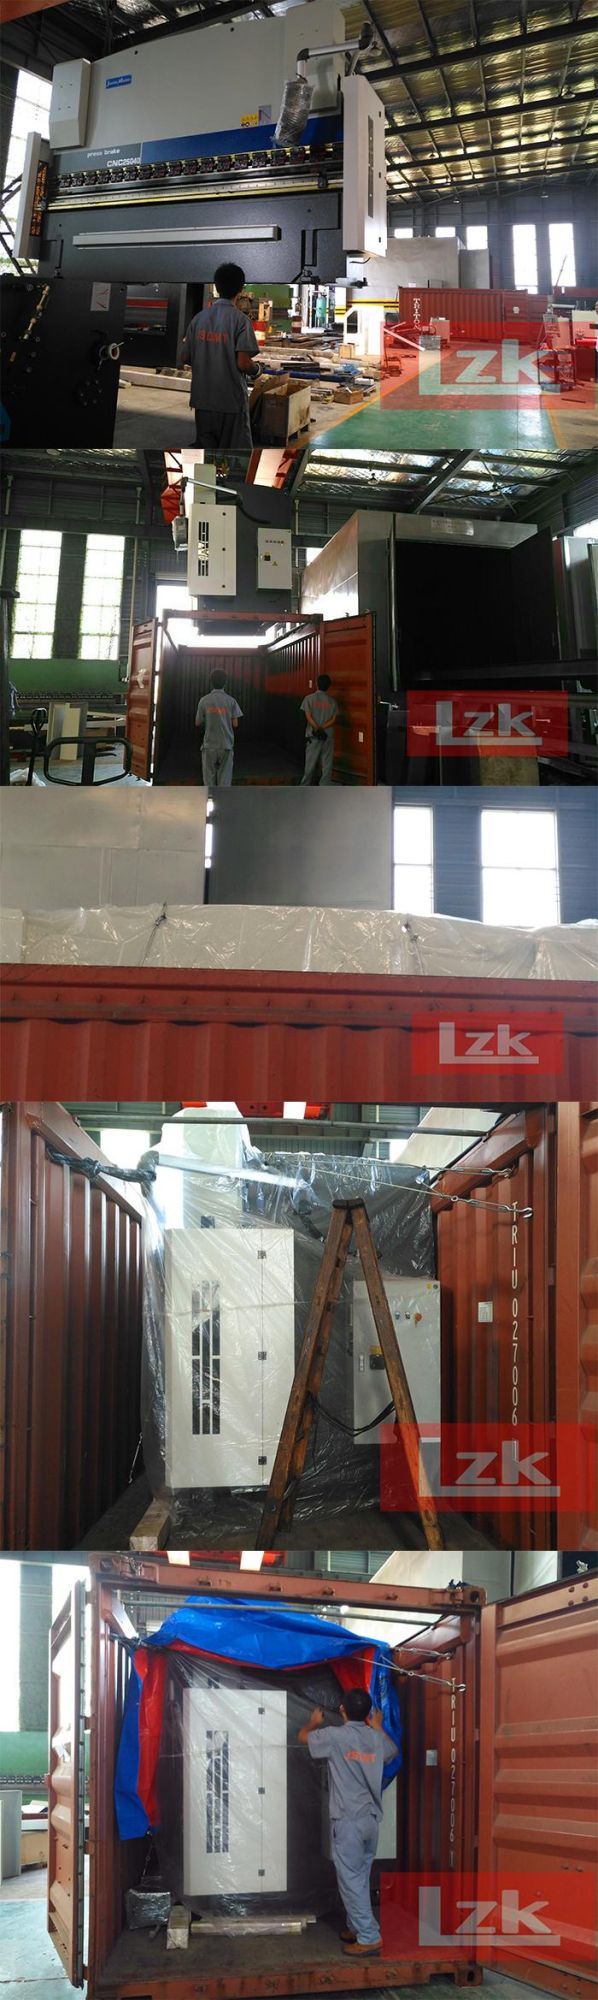 China Press Brake Manufactures Lzk